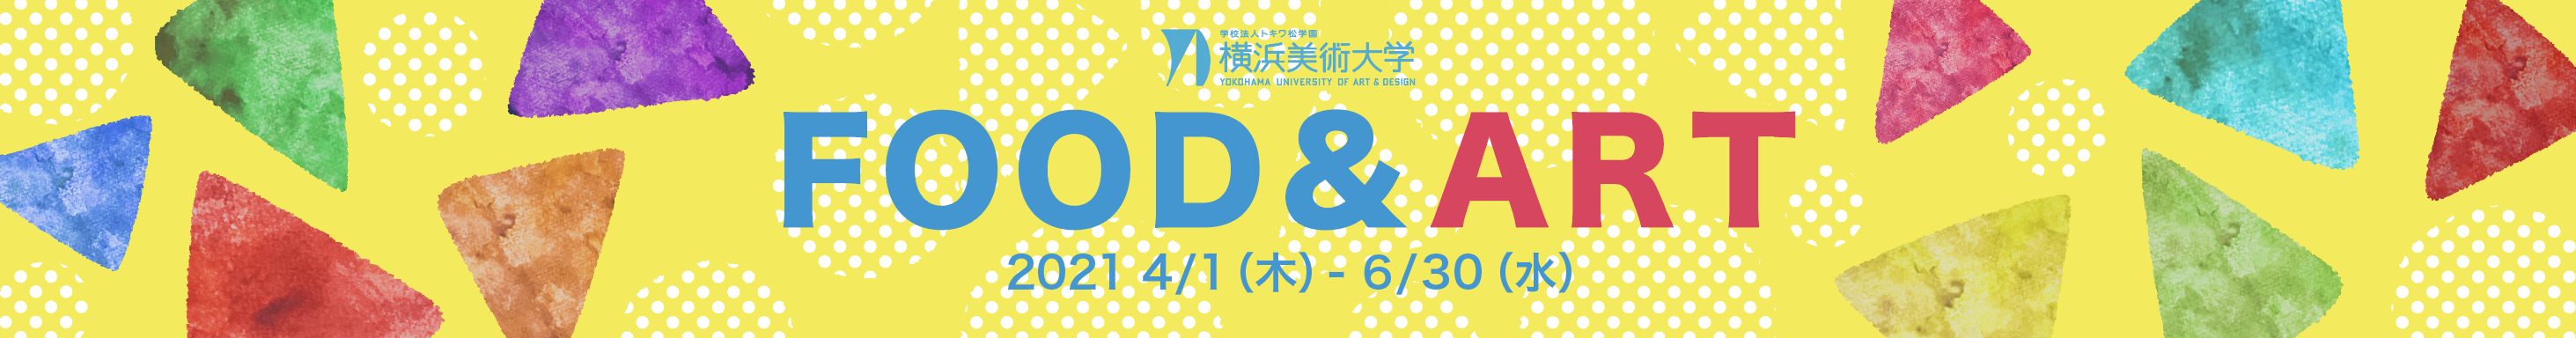 産学連携事業 横浜美術大学 × 三越伊勢丹「FOOD & ART」開催します